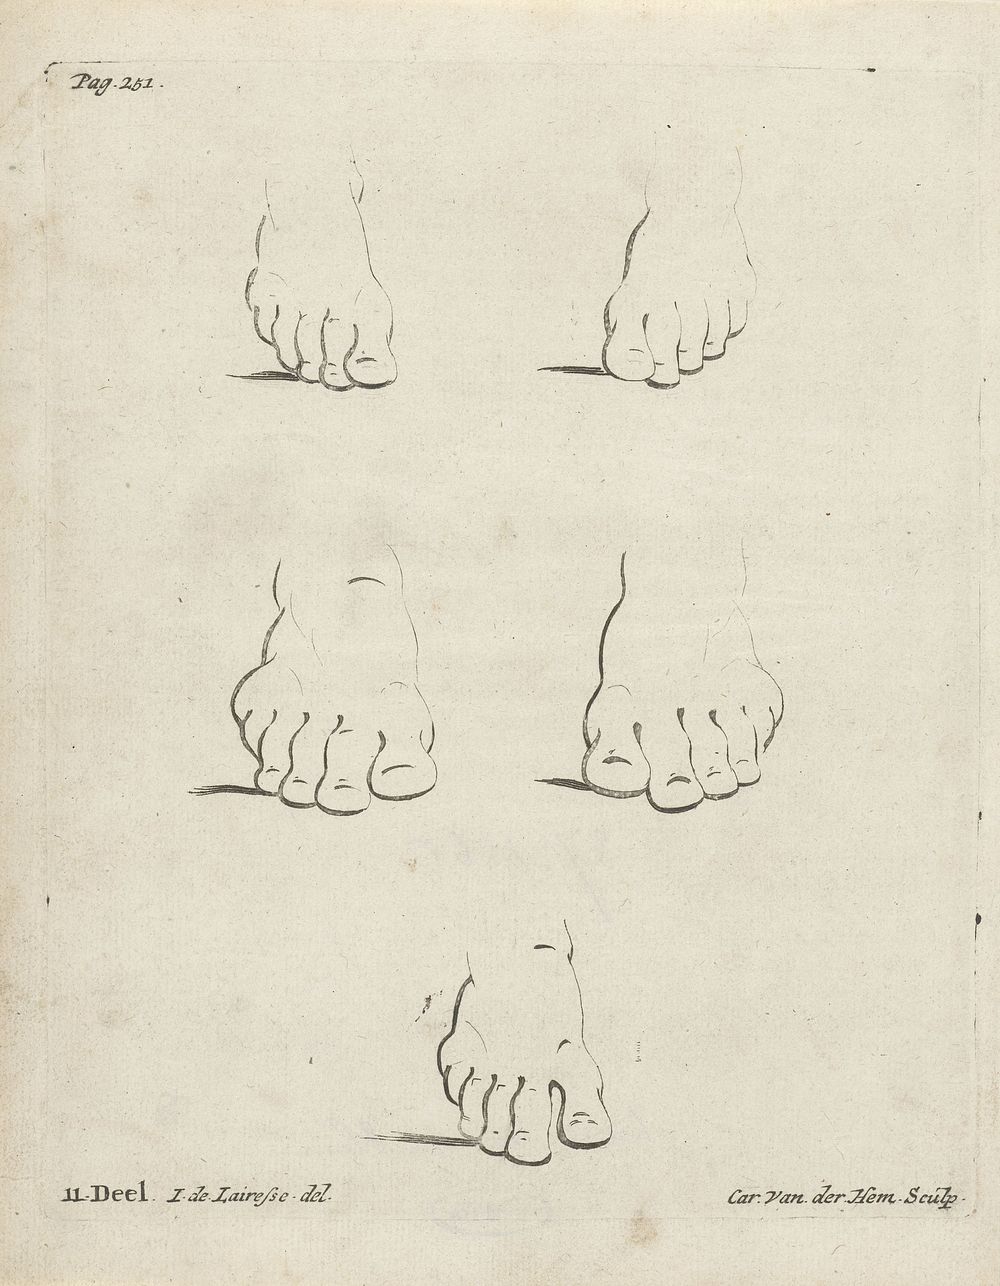 Studies van voeten (c. 1707 - c. 1722) by Carel van der Hem and Jan de Lairesse